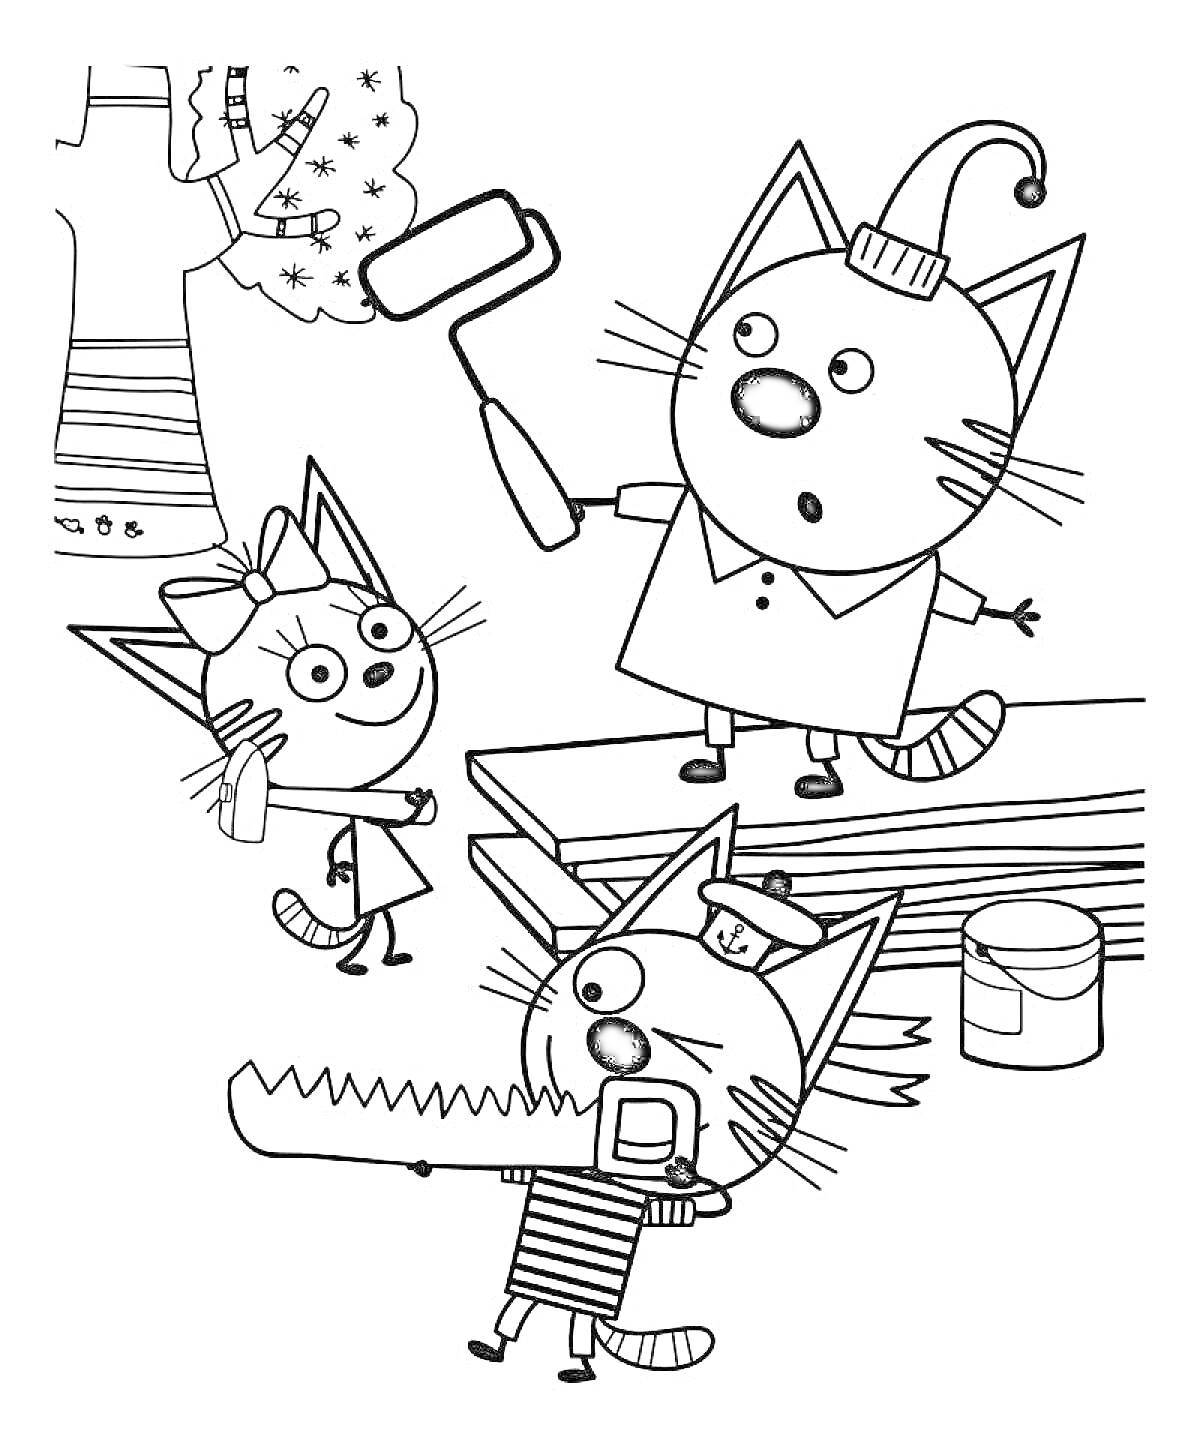 Раскраска Коты ремонтируют дерево: два кота с валиком и пилой, котёнок, дерево с кисточкой, банка с краской